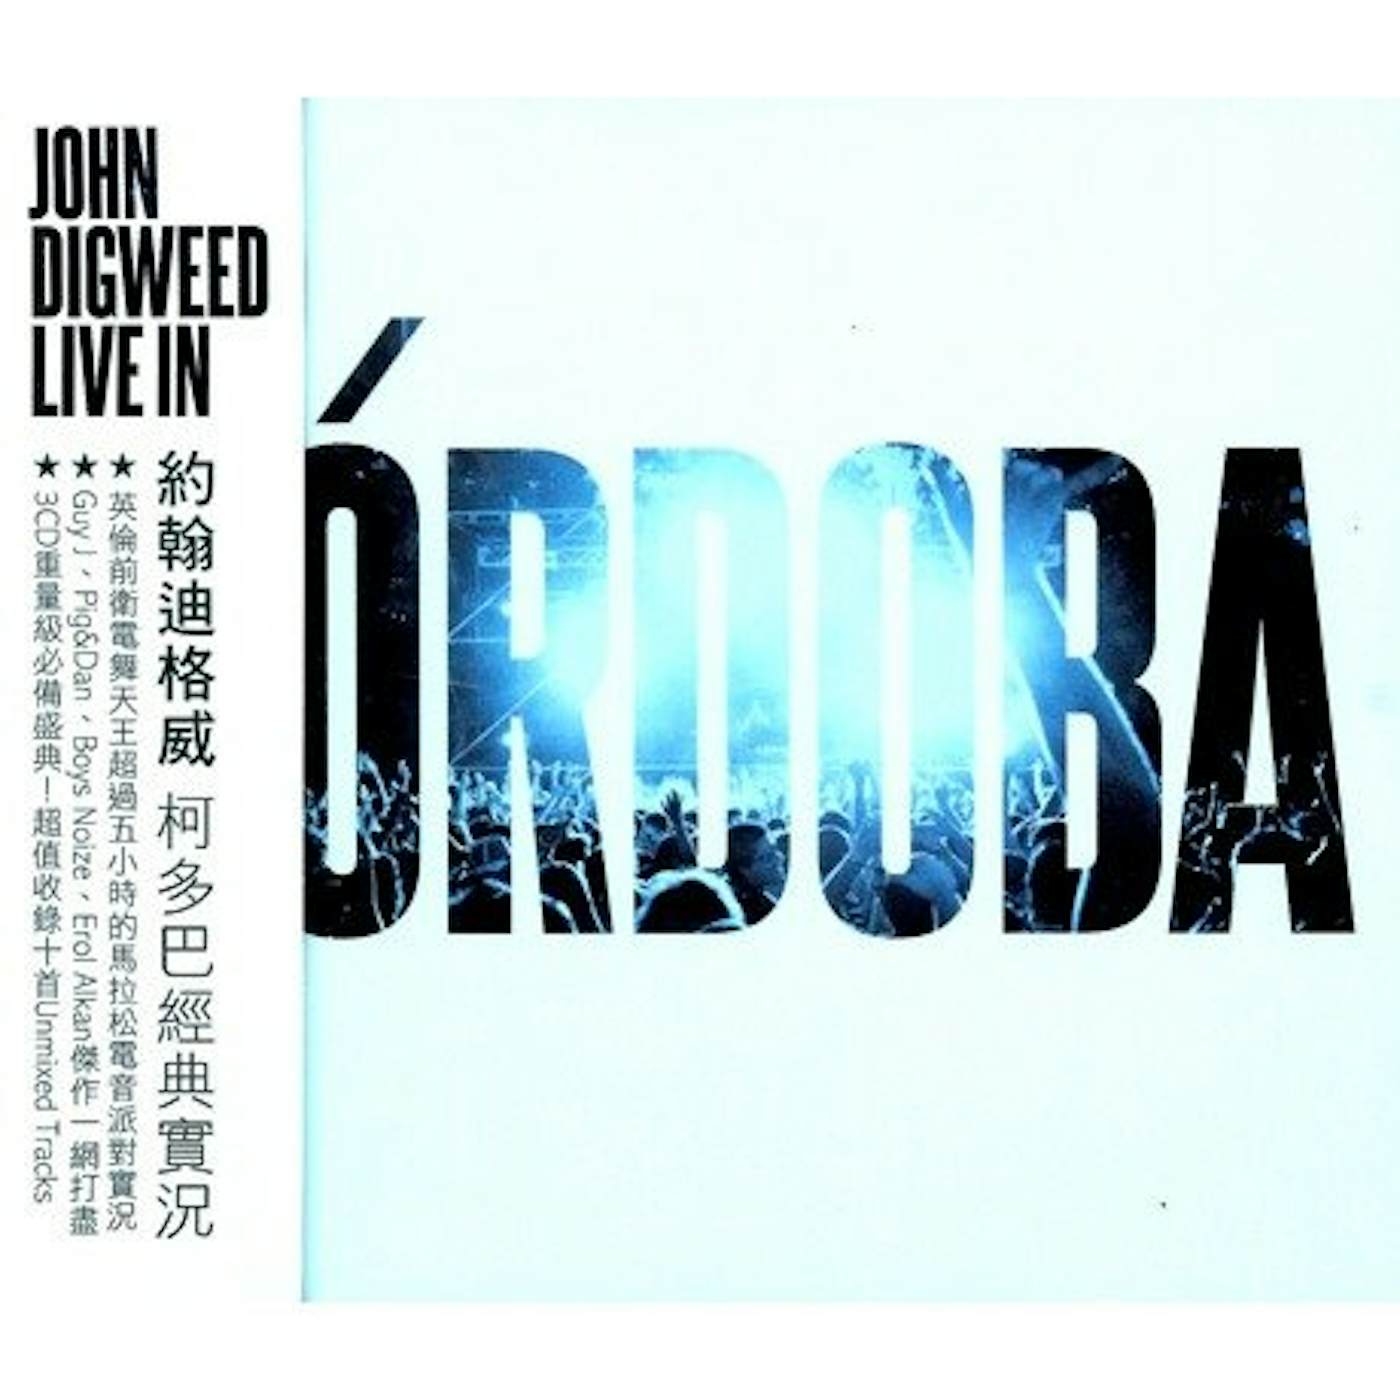 John Digweed LIVE IN CORDOBA CD